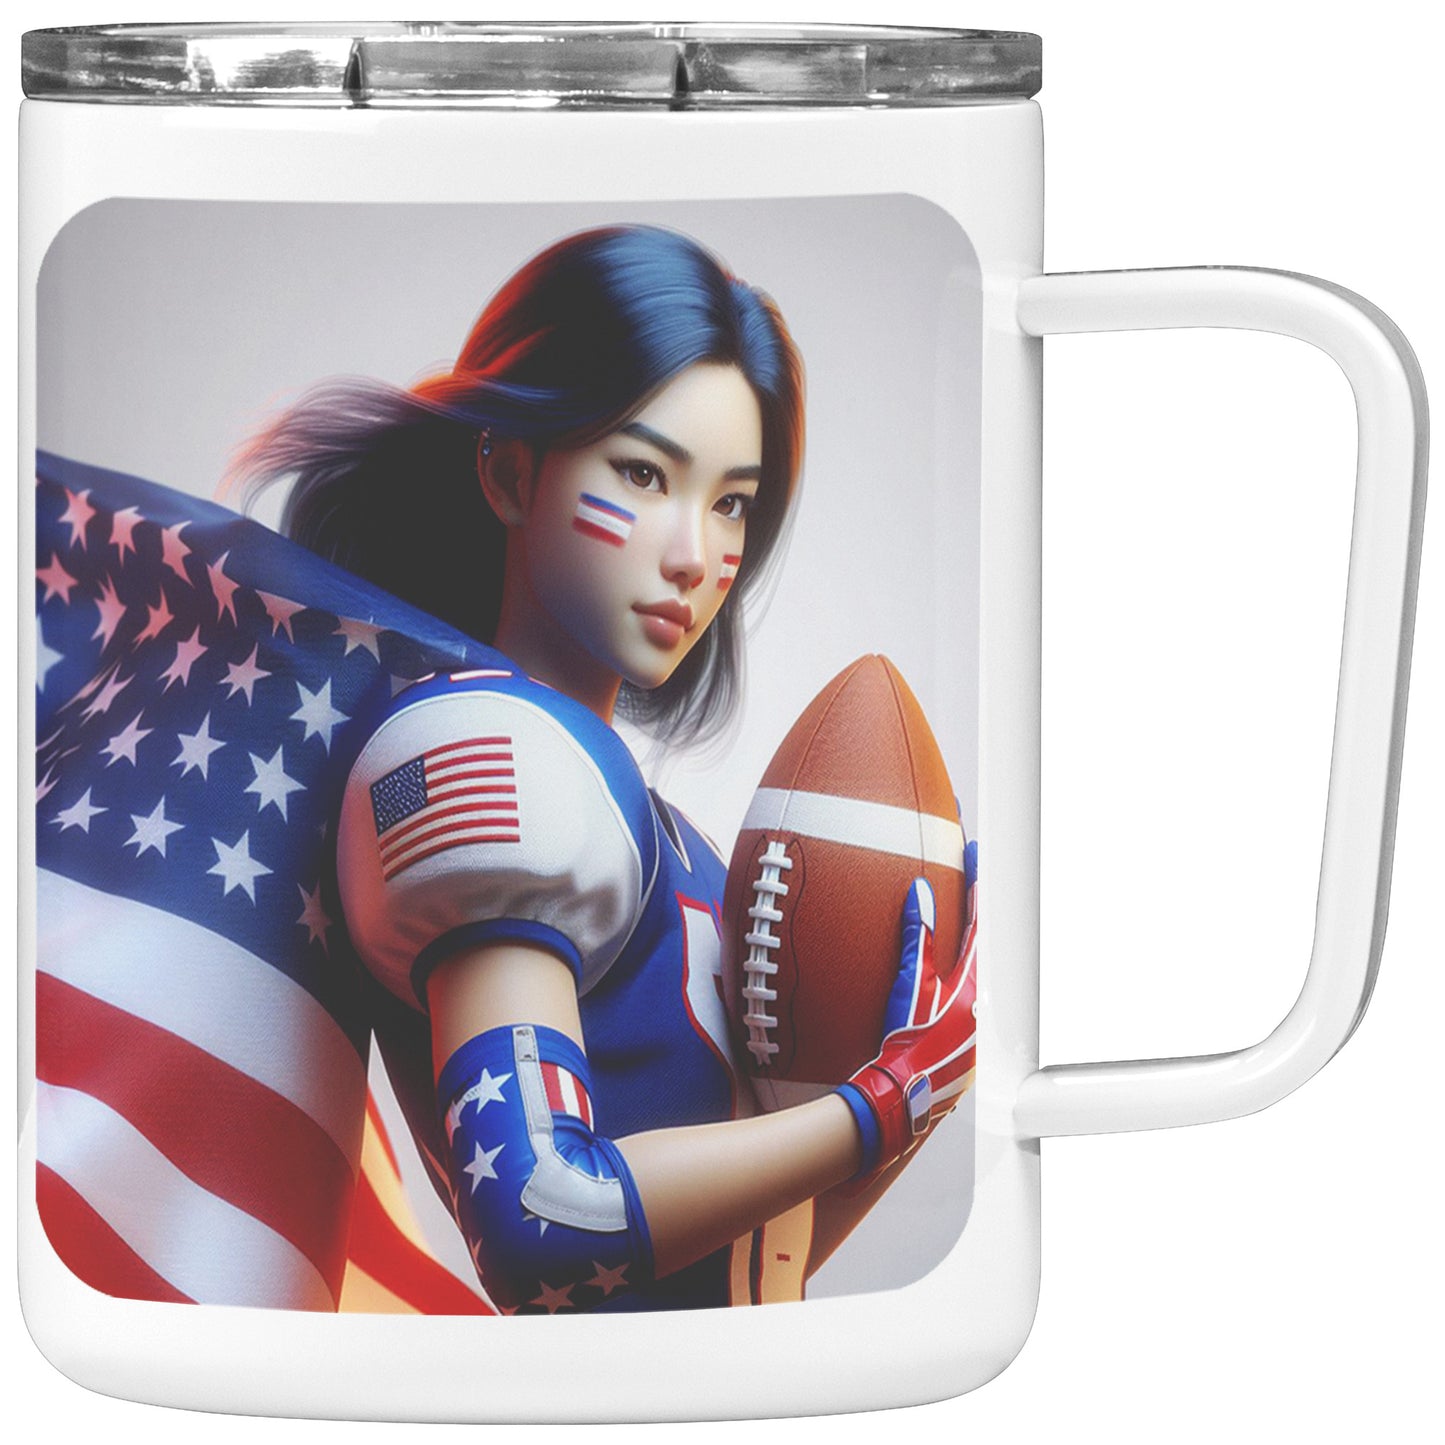 Woman Football Player - Insulated Coffee Mug #37